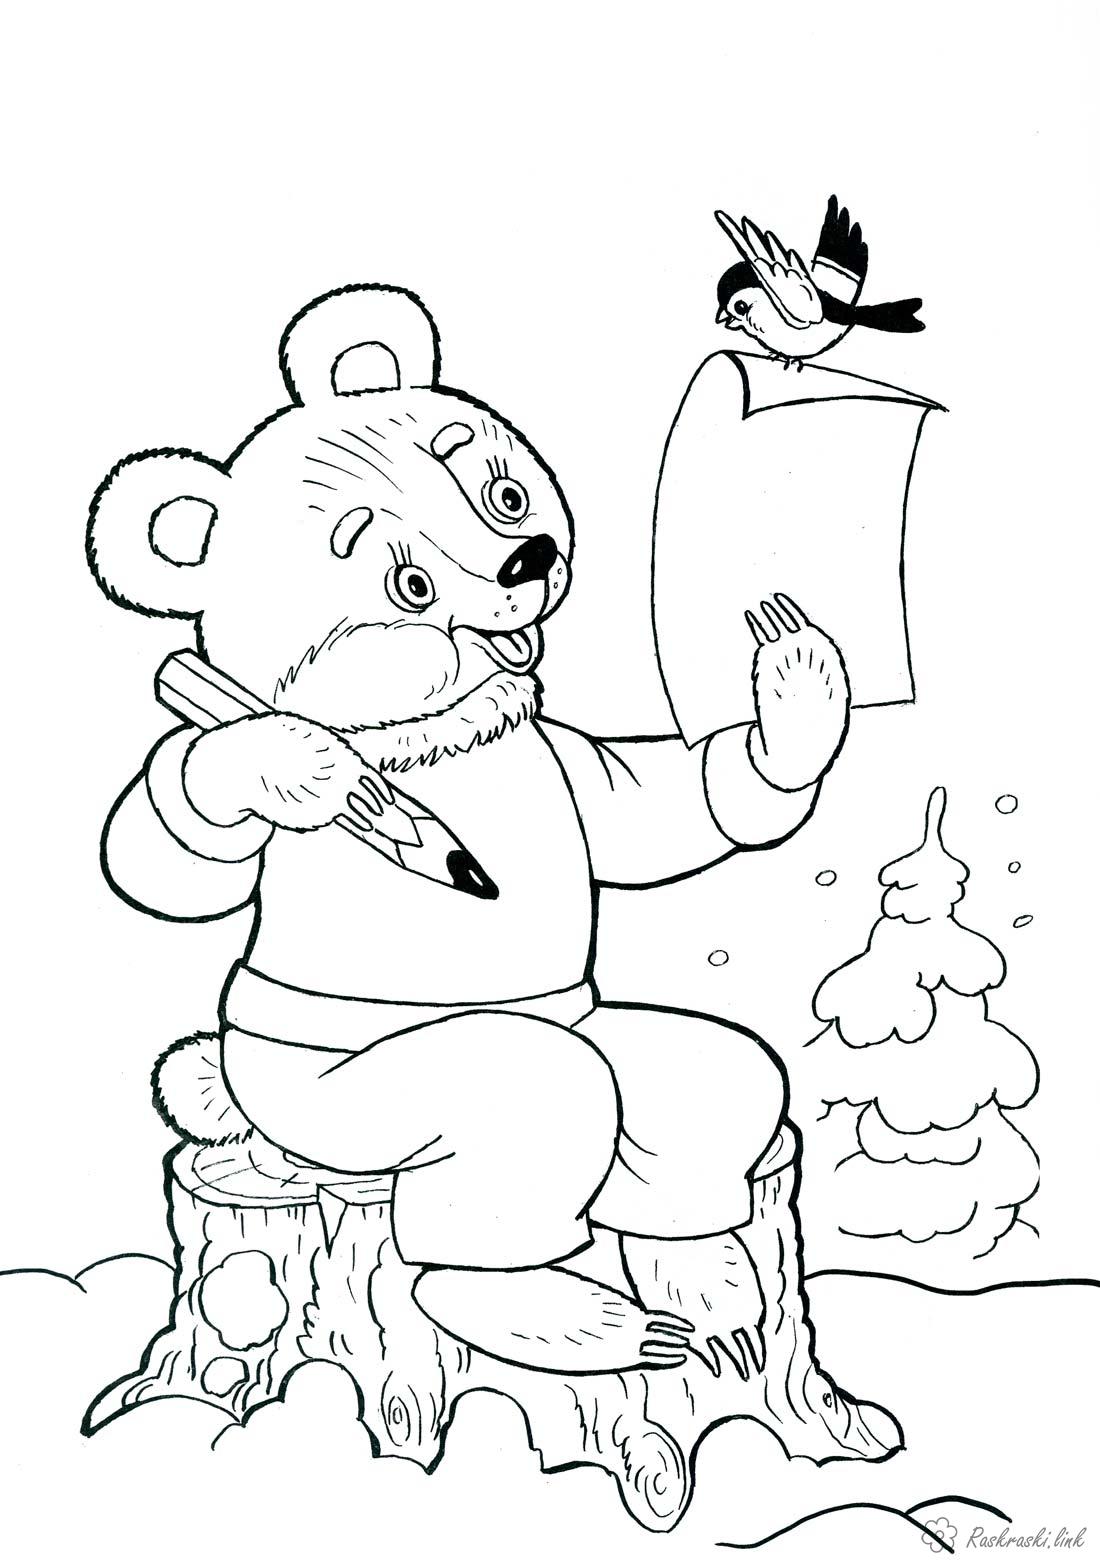 Розмальовки Новий рік дитяча новорічна розфарбування, ведмедик пише лист Діду Морозу